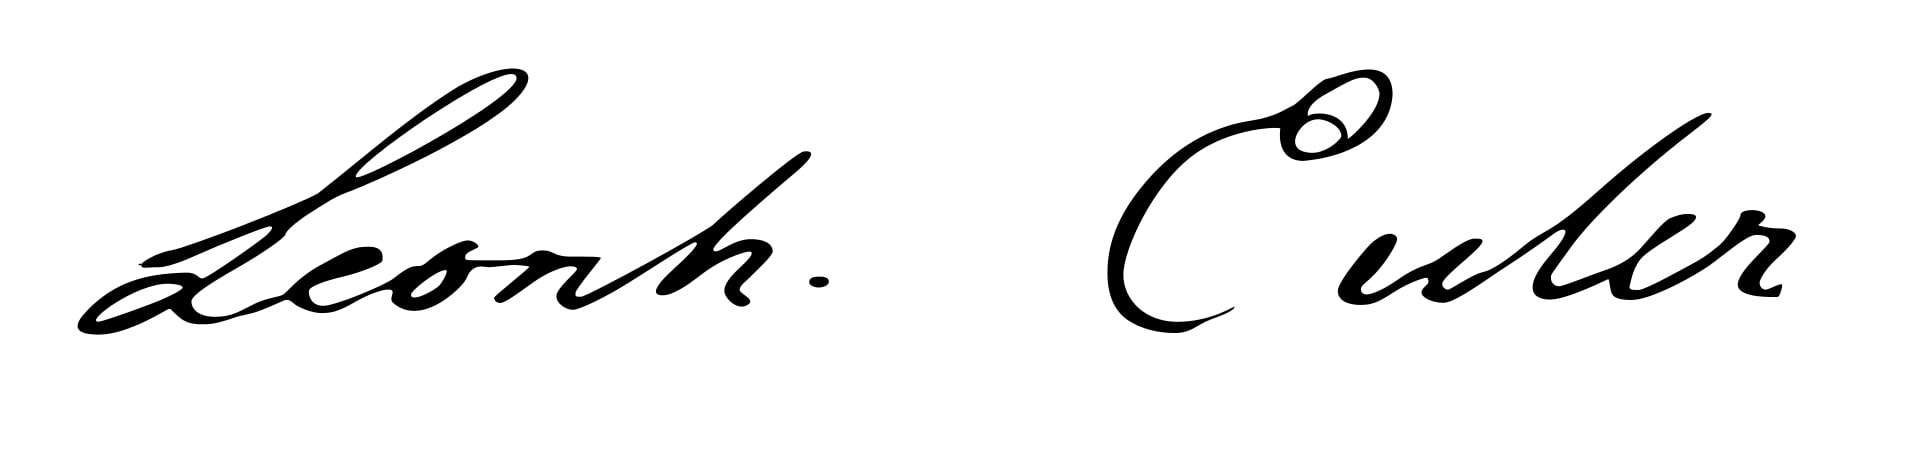 Leonhard Euler Signature